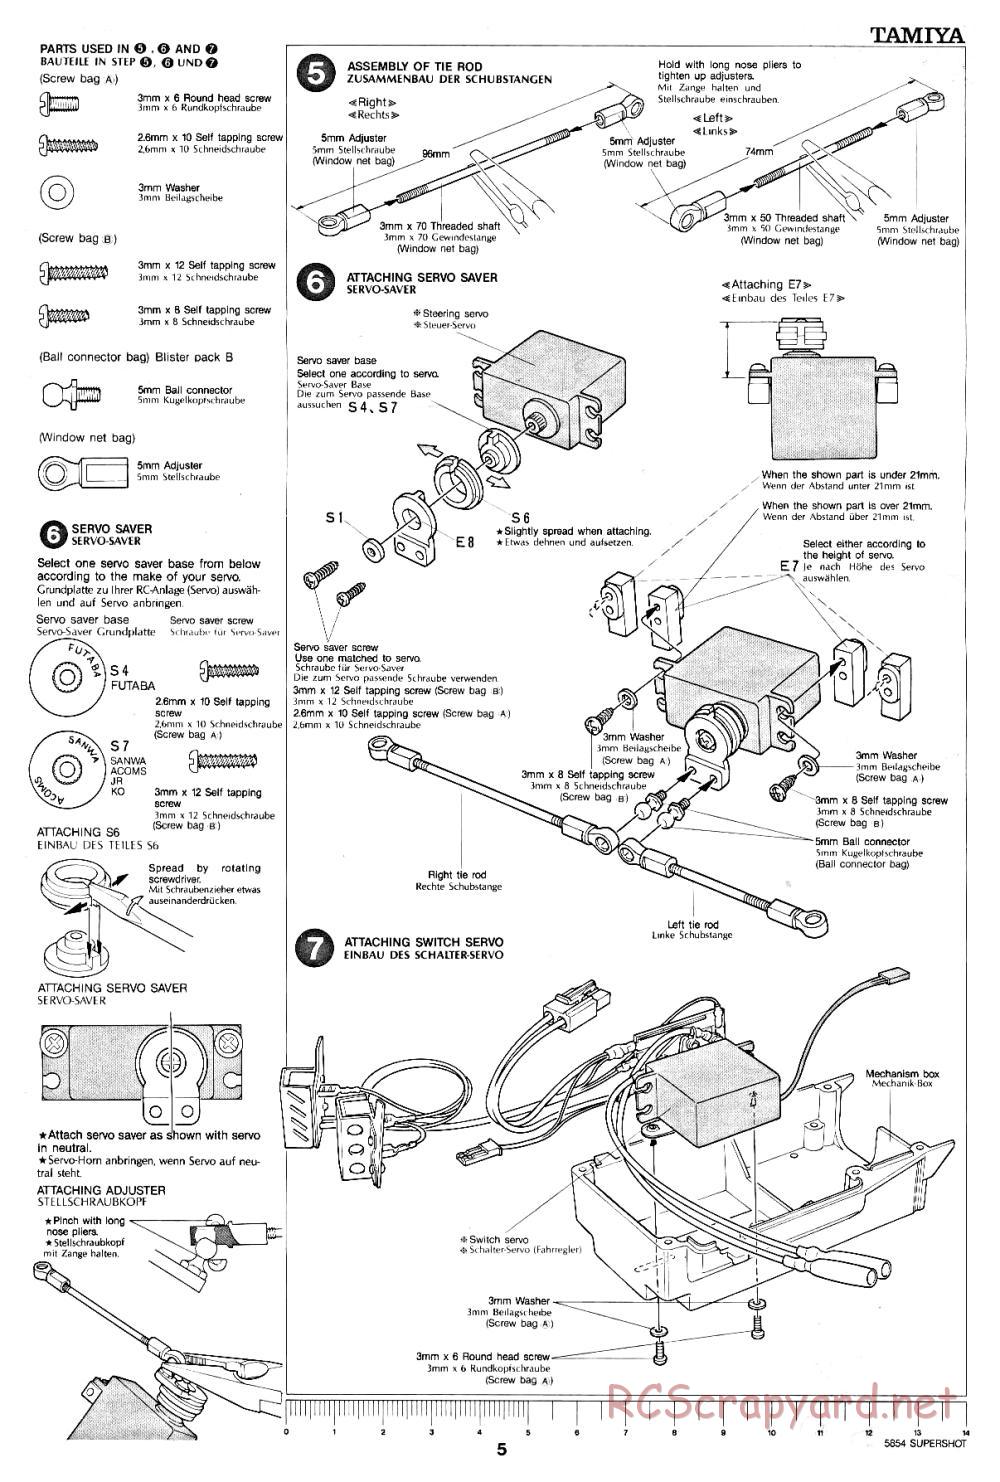 Tamiya - Supershot - 58054 - Manual - Page 5